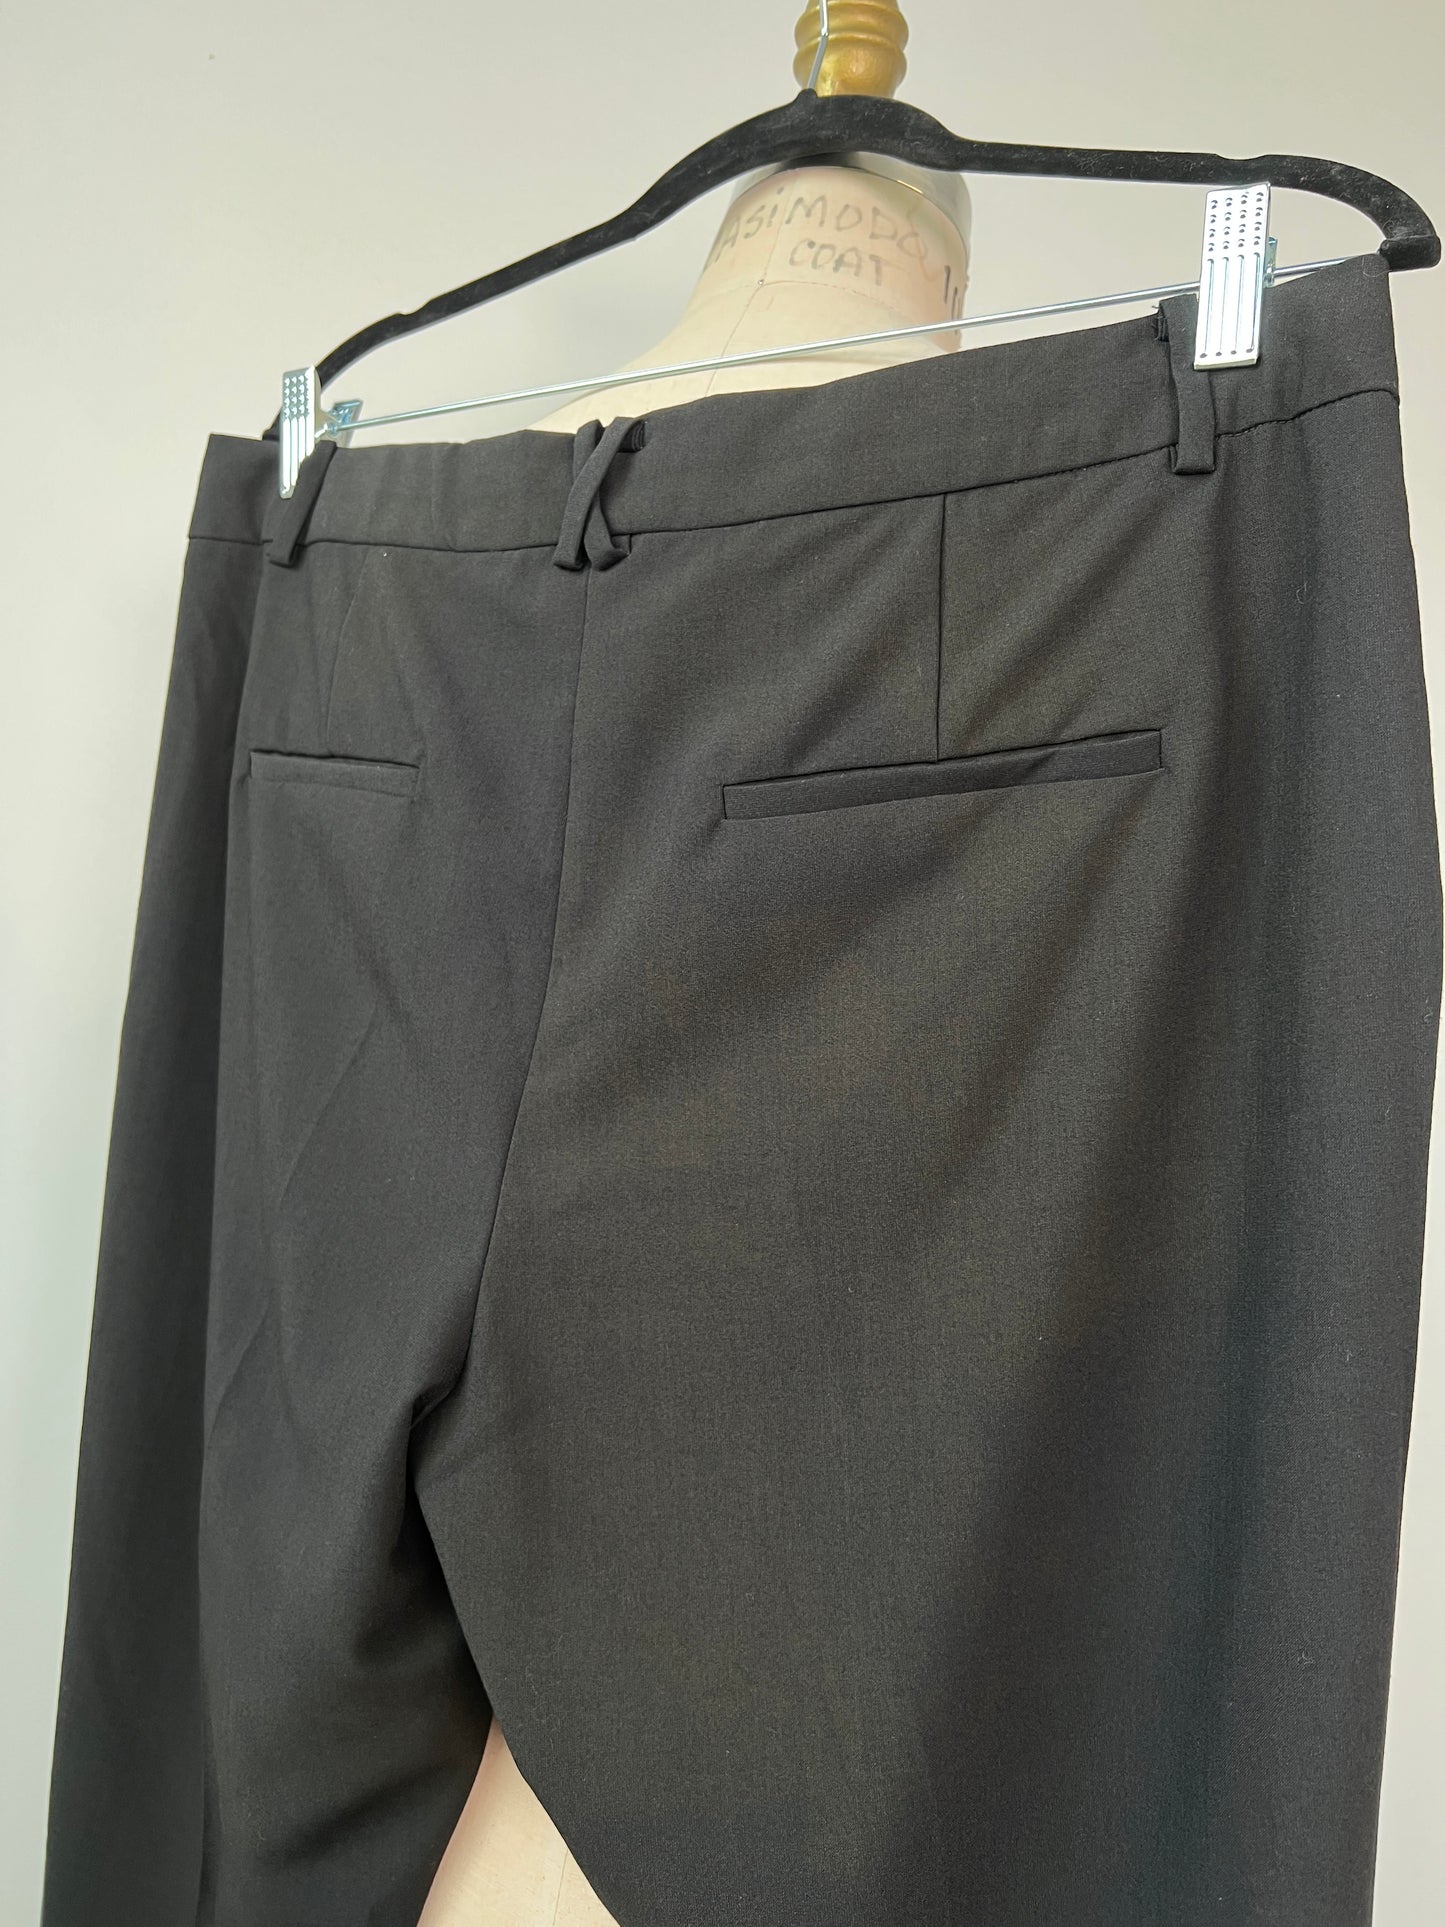 Pantalon tailleur noir /vert bootcut lavable (14)